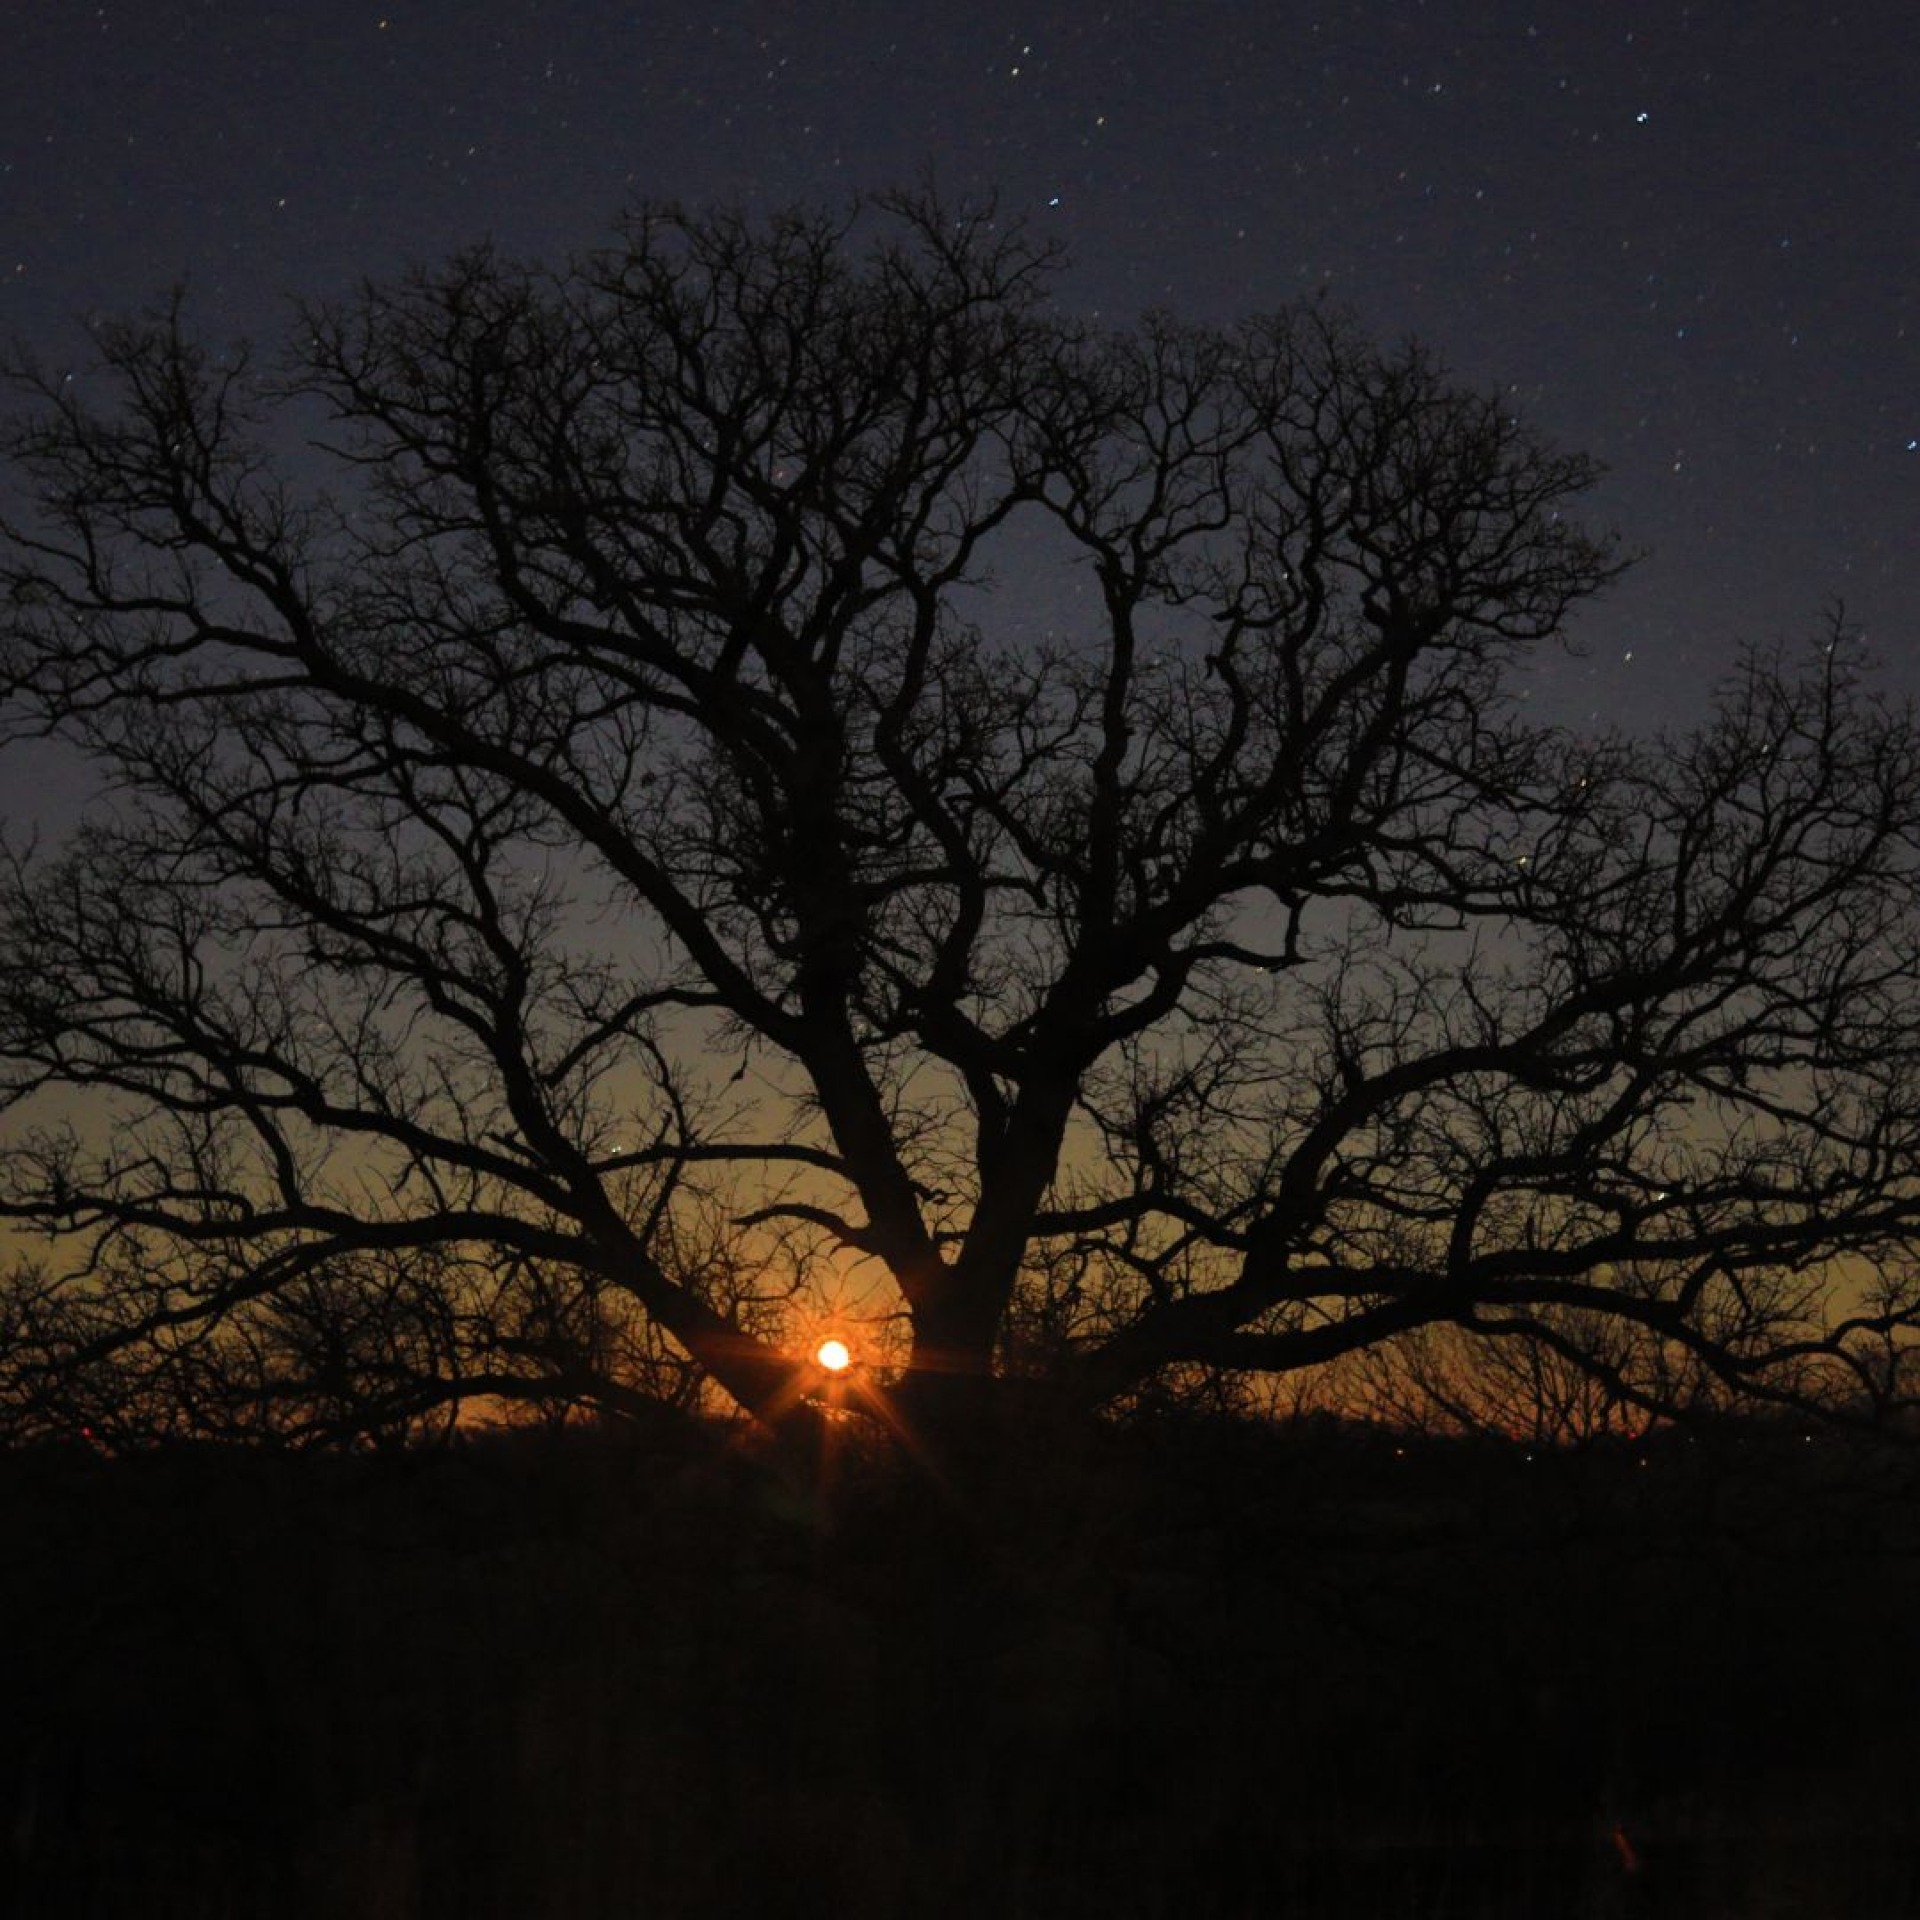 A bur oak tree under a starry winter night.